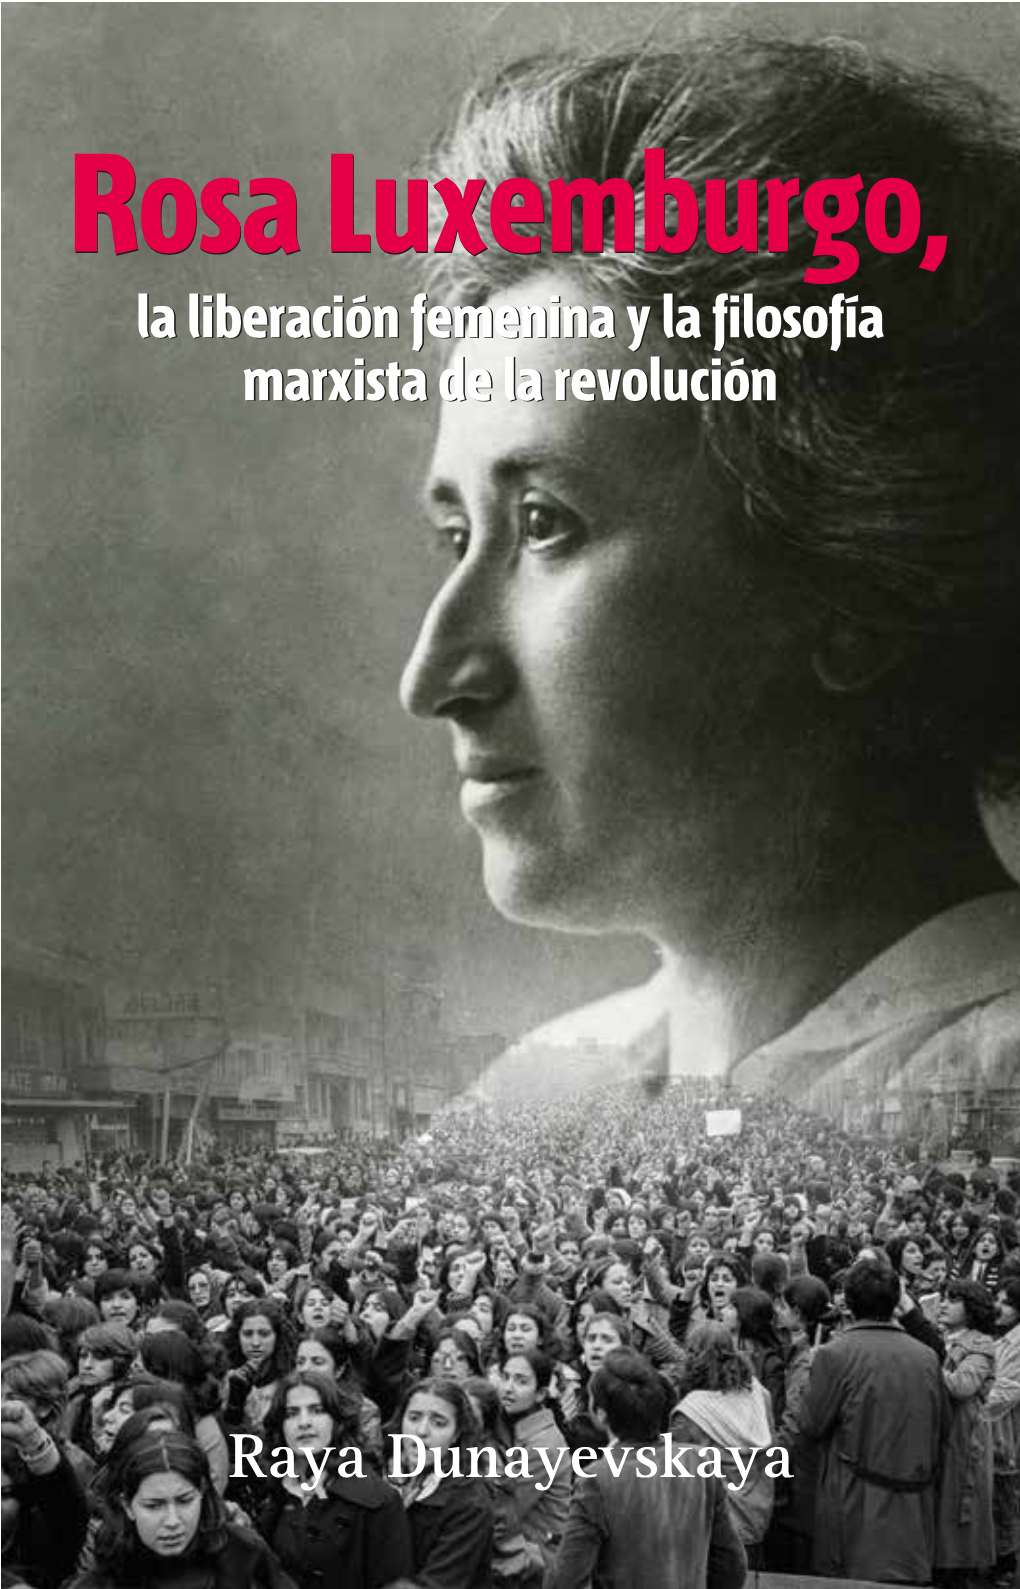 Rosa Luxemburgo, La Liberación Femenina Y La Filosofía Marxista De La Revolución